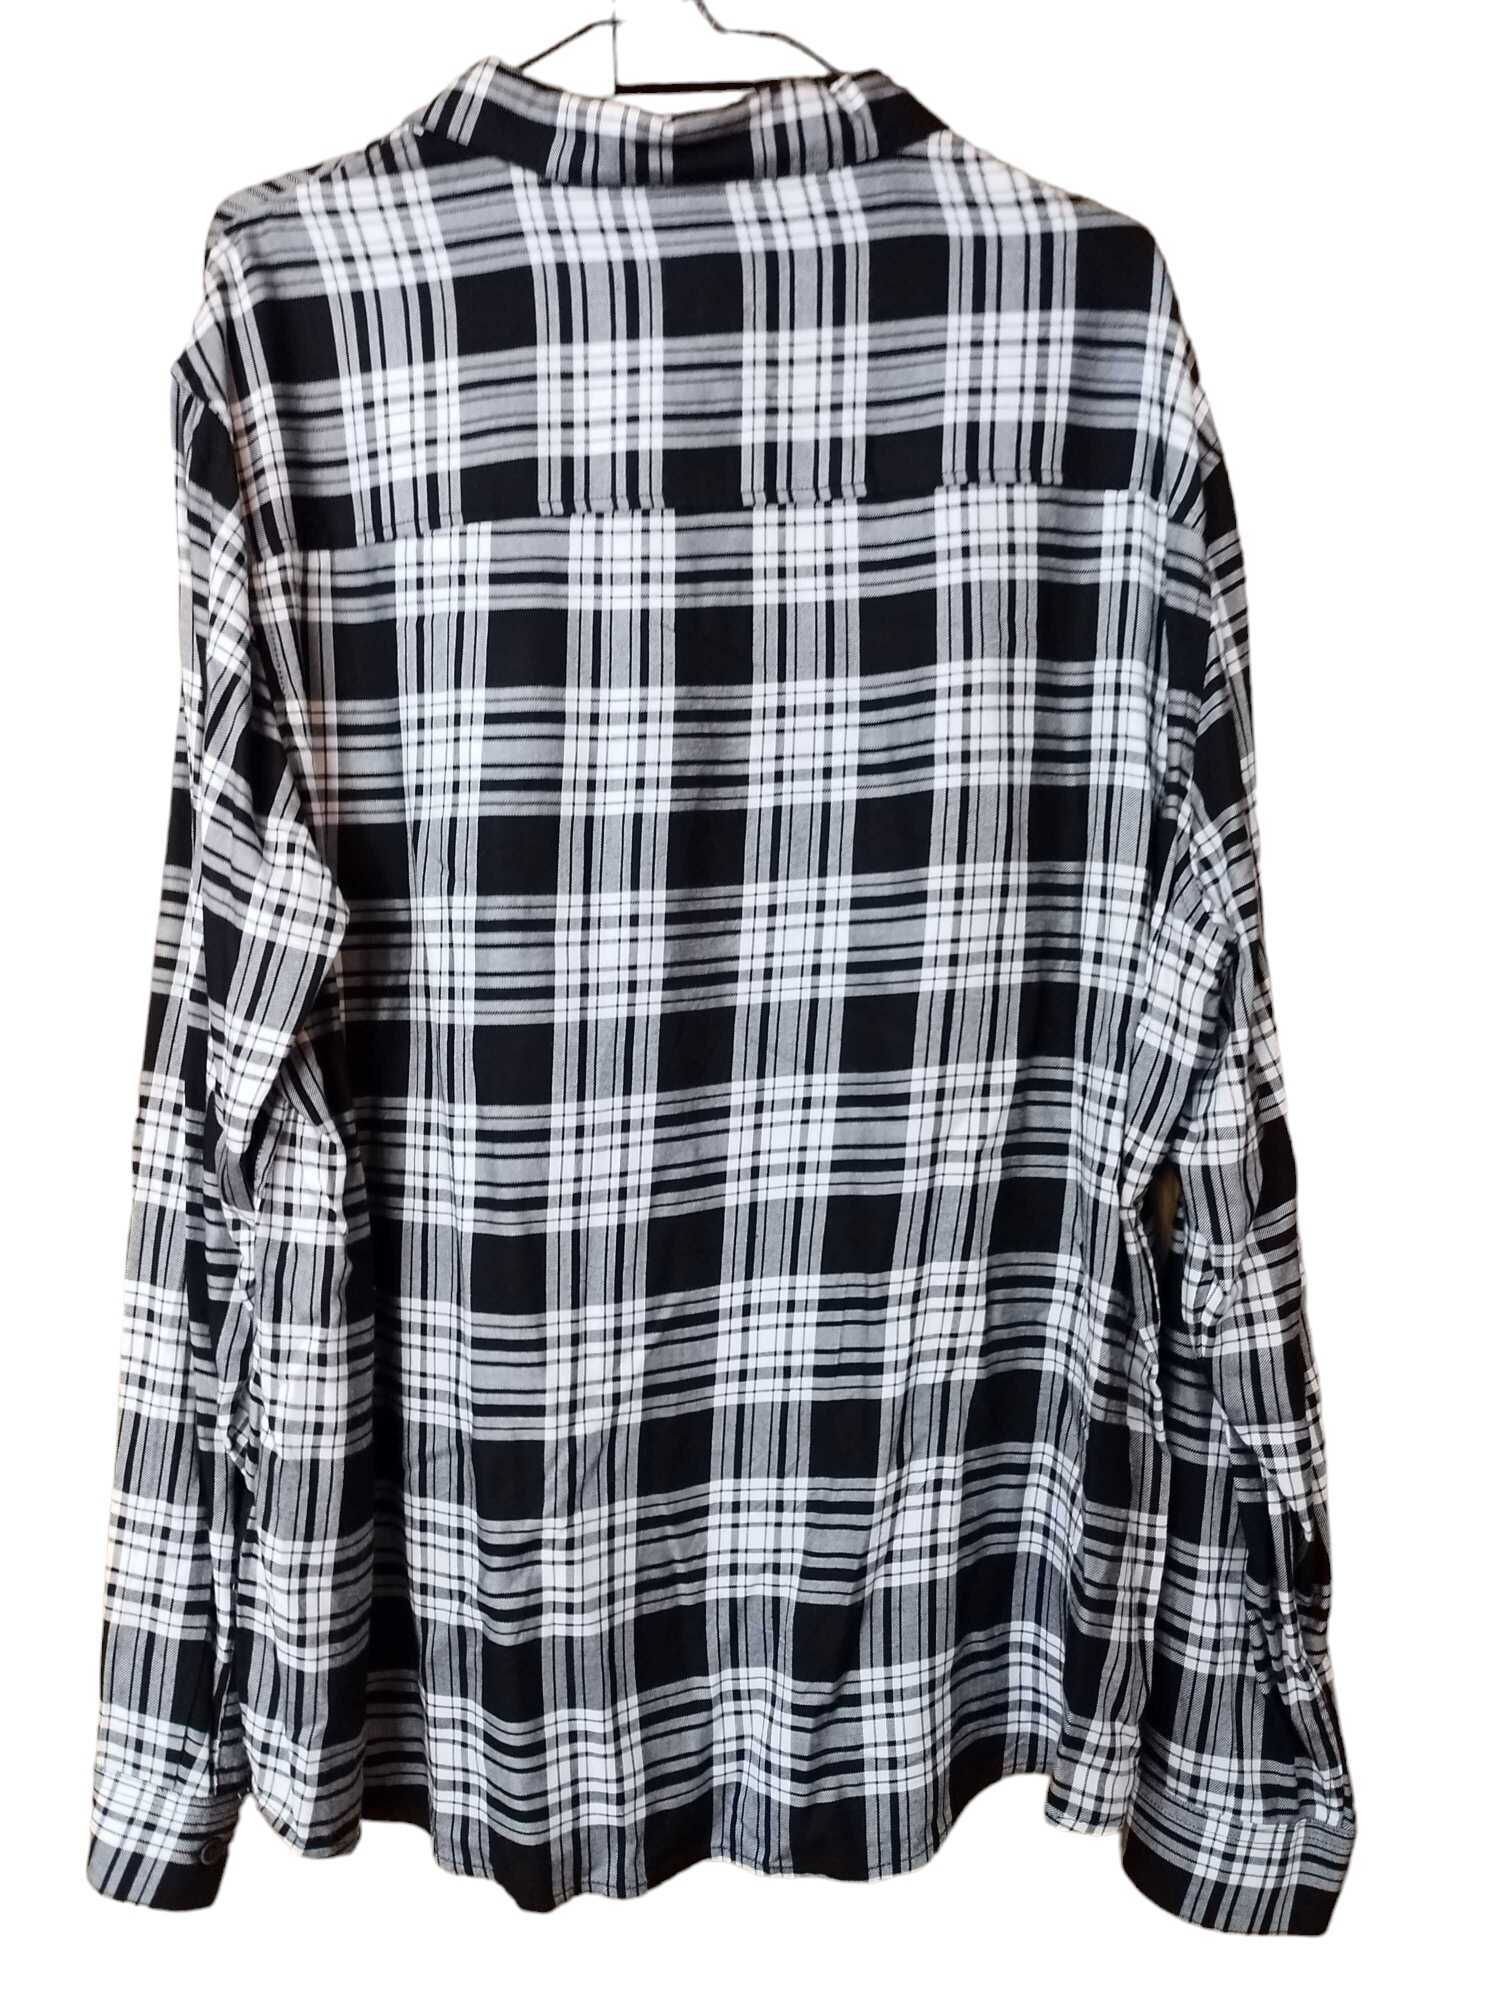 Мъжка карирана риза H&M, 100% вискоза, XL